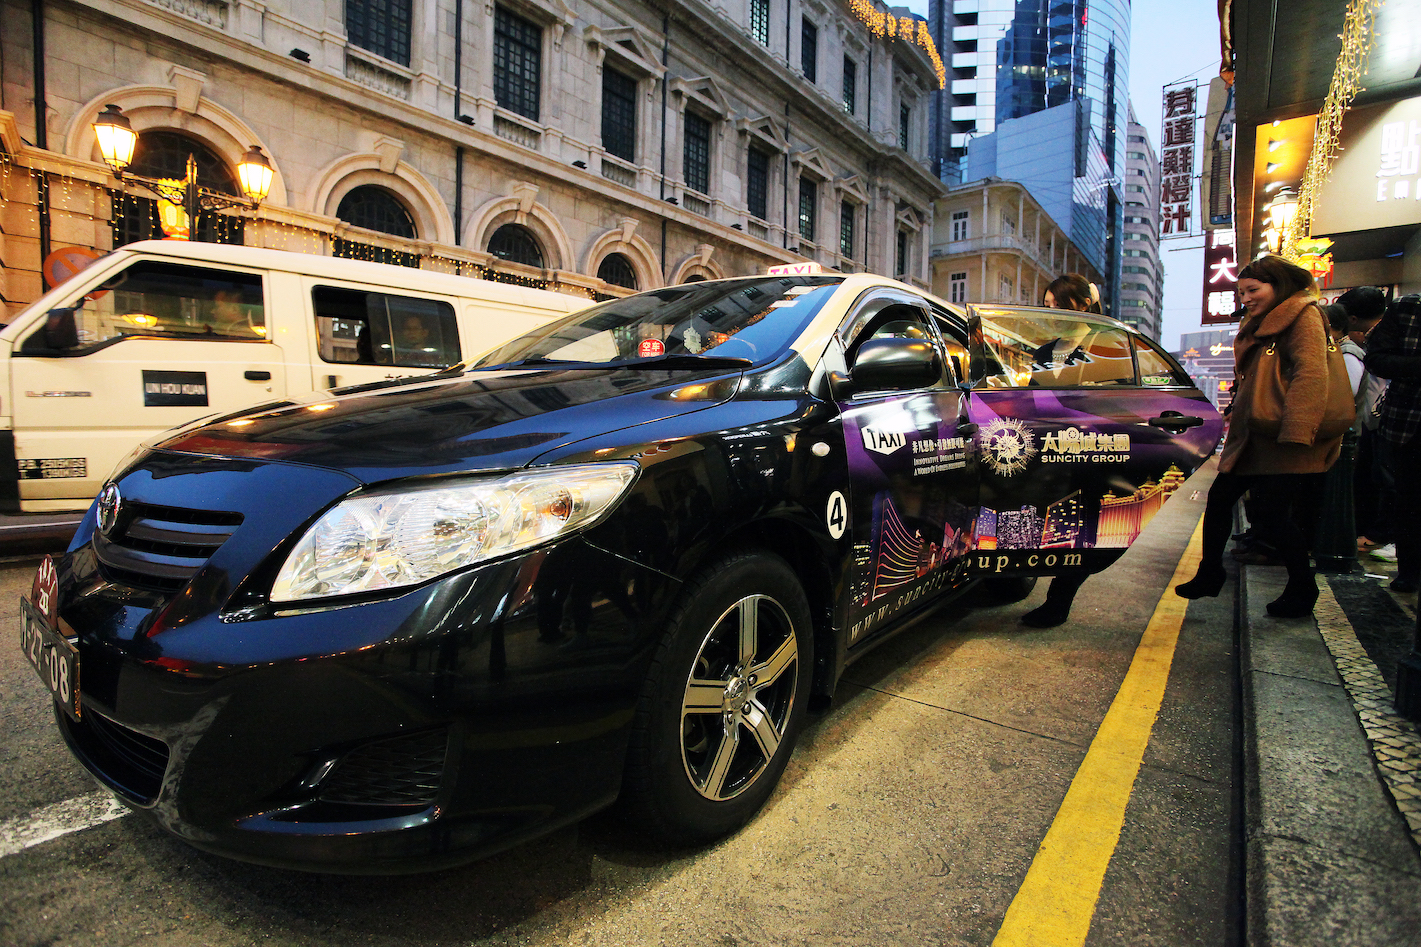 Táxis | Associações pedem 10 mil patacas por taxista